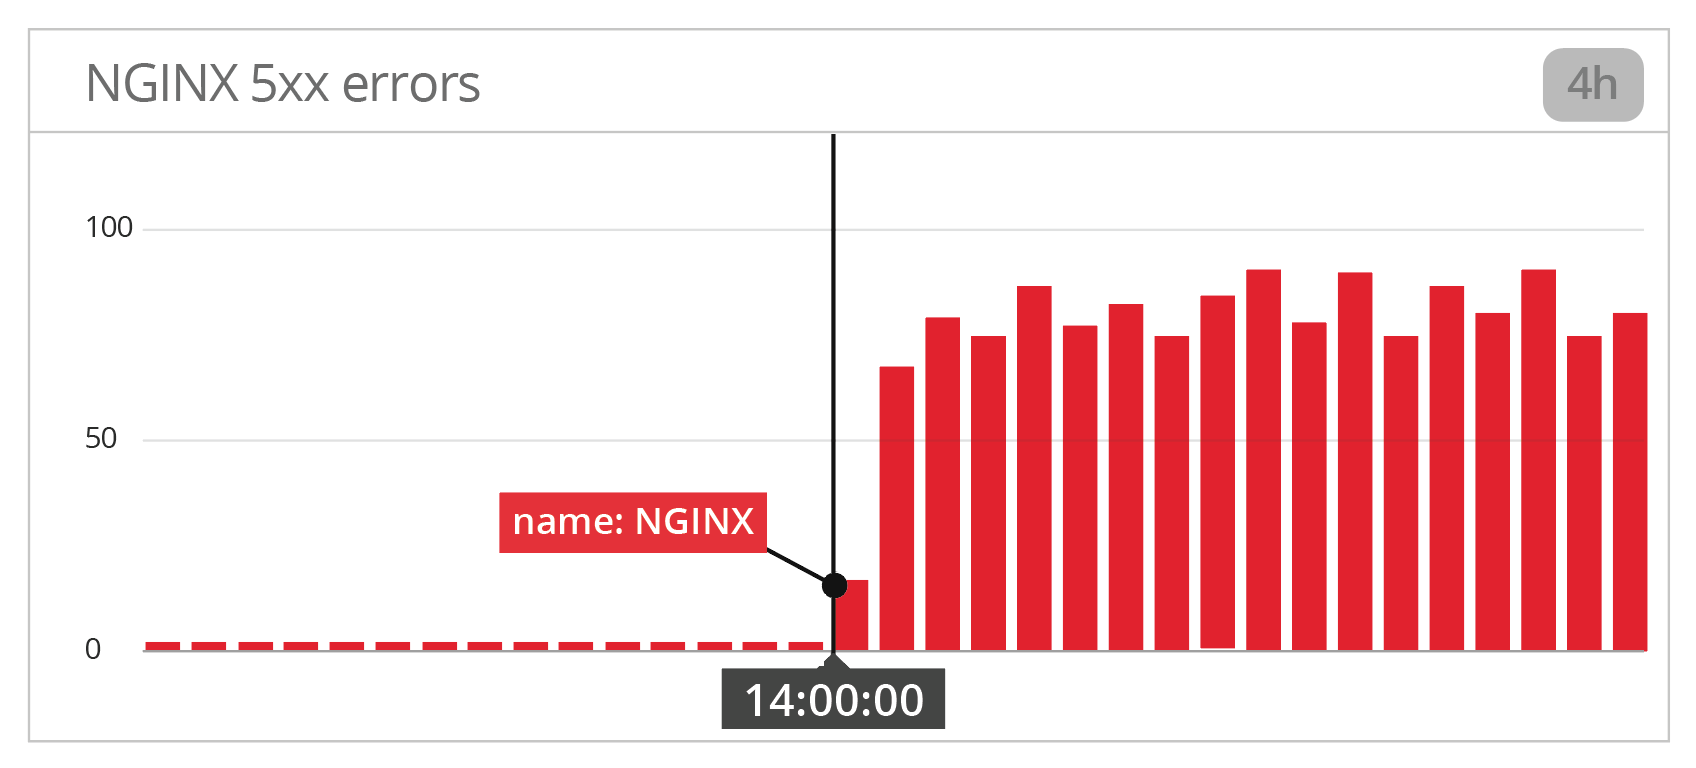 NGINX 5xx errors